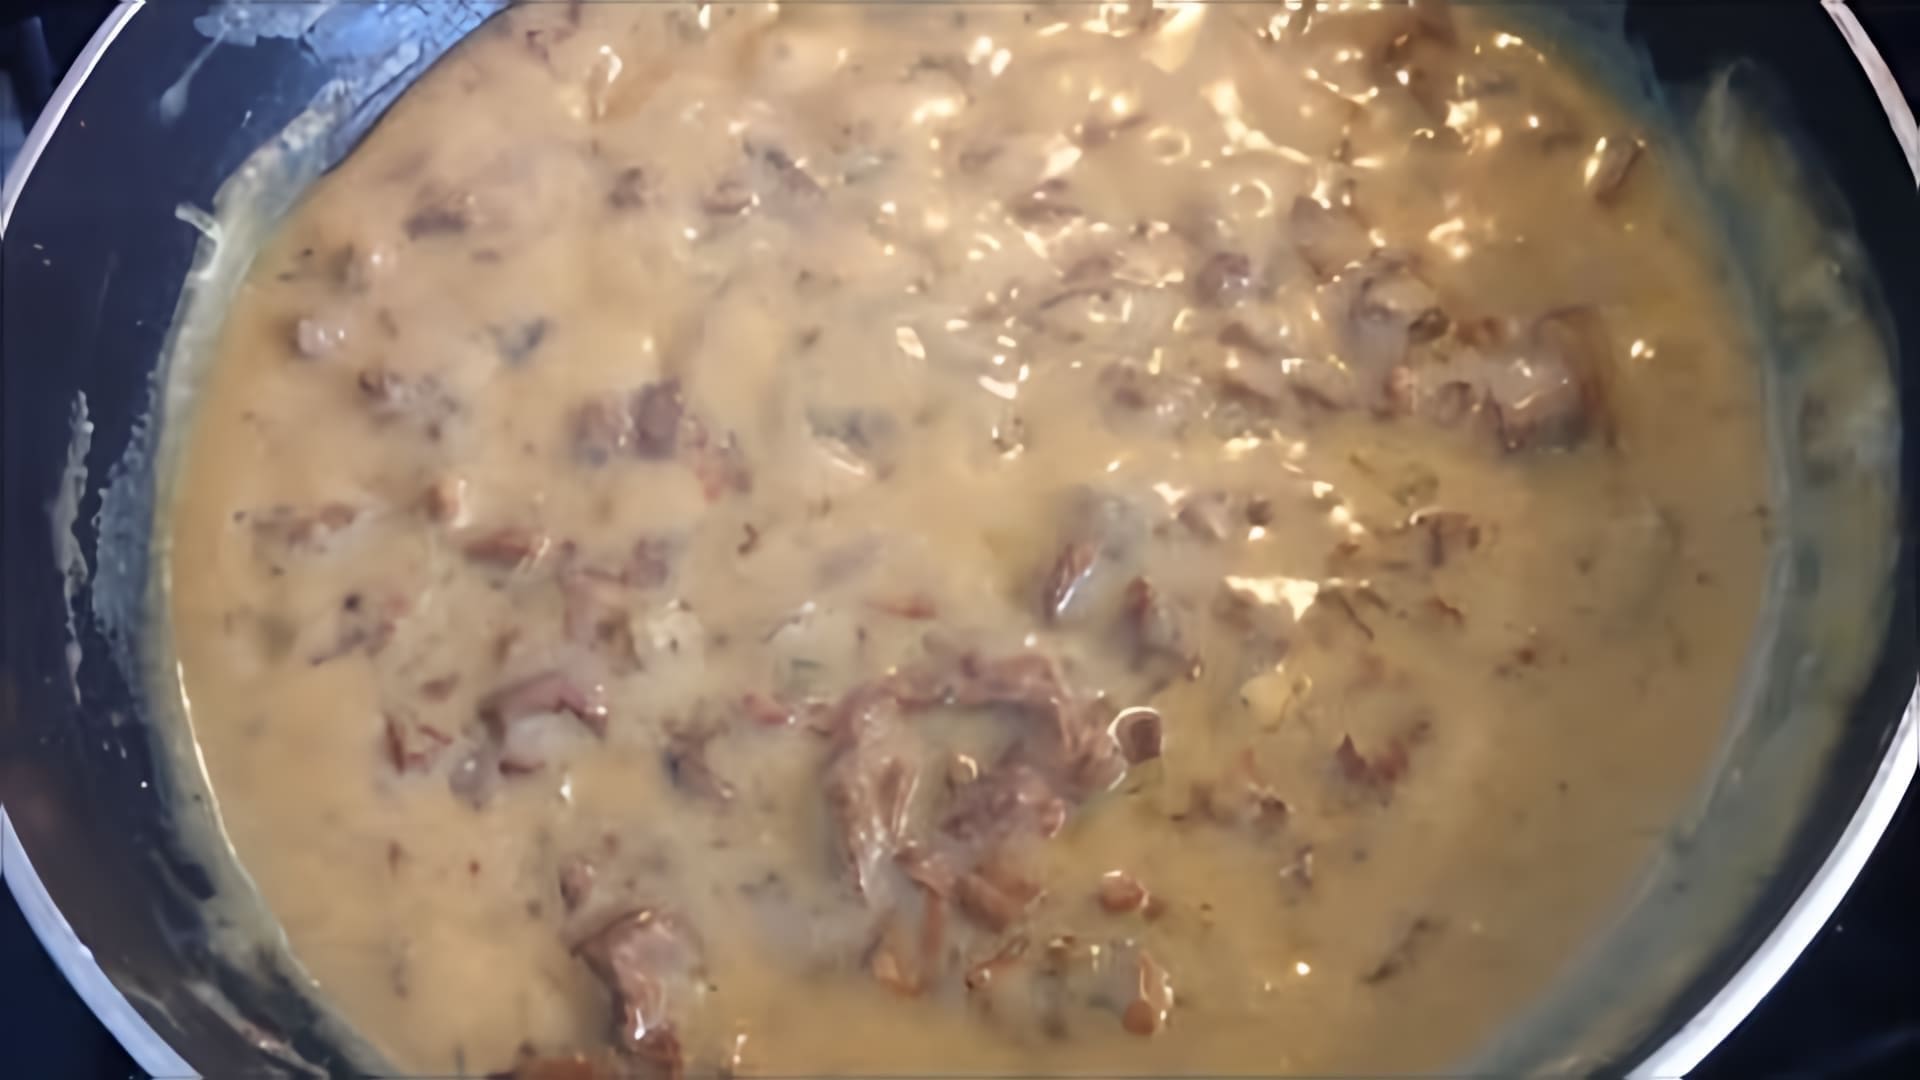 Рецепт грибного соуса из сушеных лисичек - это вкусное и ароматное блюдо, которое можно приготовить в домашних условиях